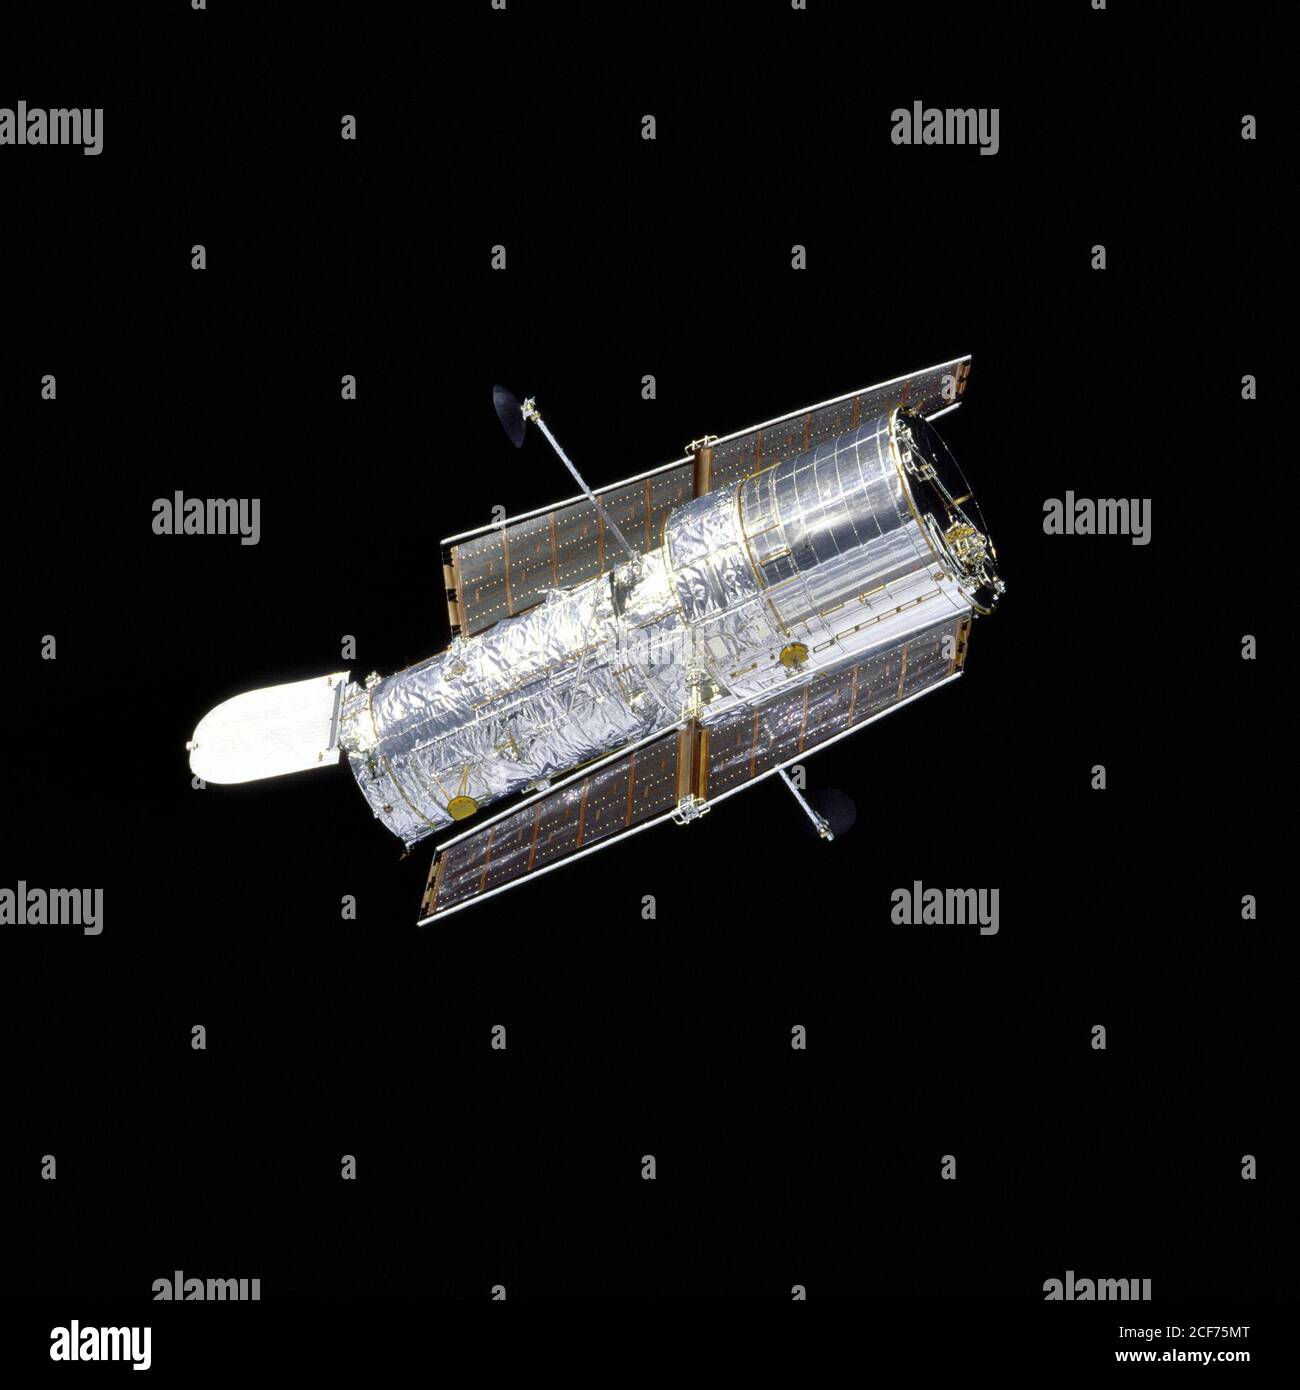 Orbiter Discovery führt nach der Wiederauslösung auf der zweiten Wartungsmission HST SM-02 einen Flyaround des Hubble Space Telescope (HST) durch. Das silberne Teleskop, mit geöffneter Öffnung, wird scharf von der samtigen Schwärze des Weltraums kontrastiert. Stockfoto